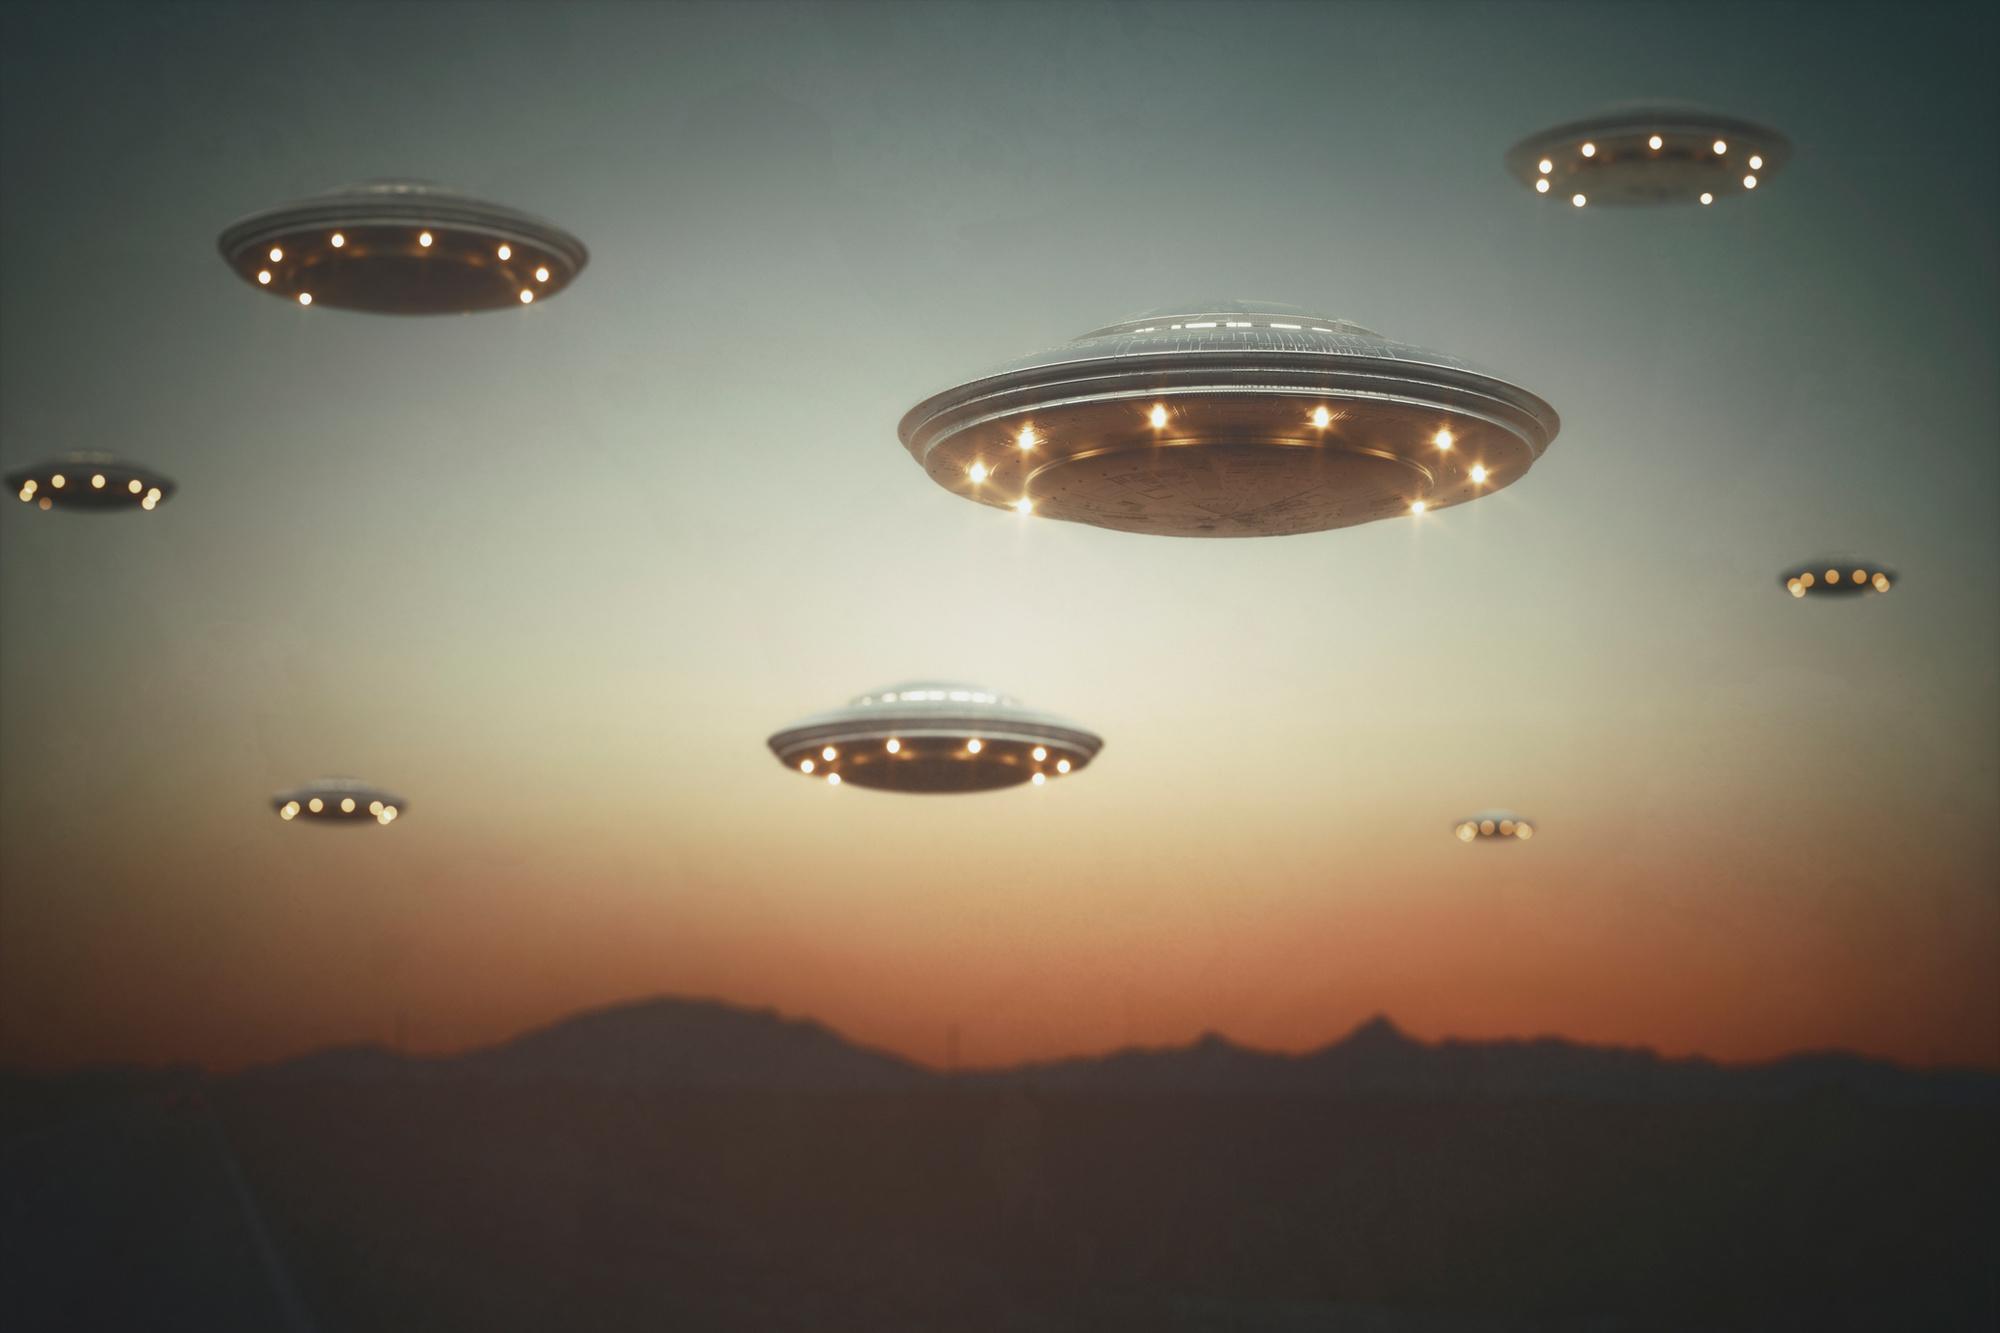 Ovnis et extraterrestres : un rapport américain très attendu